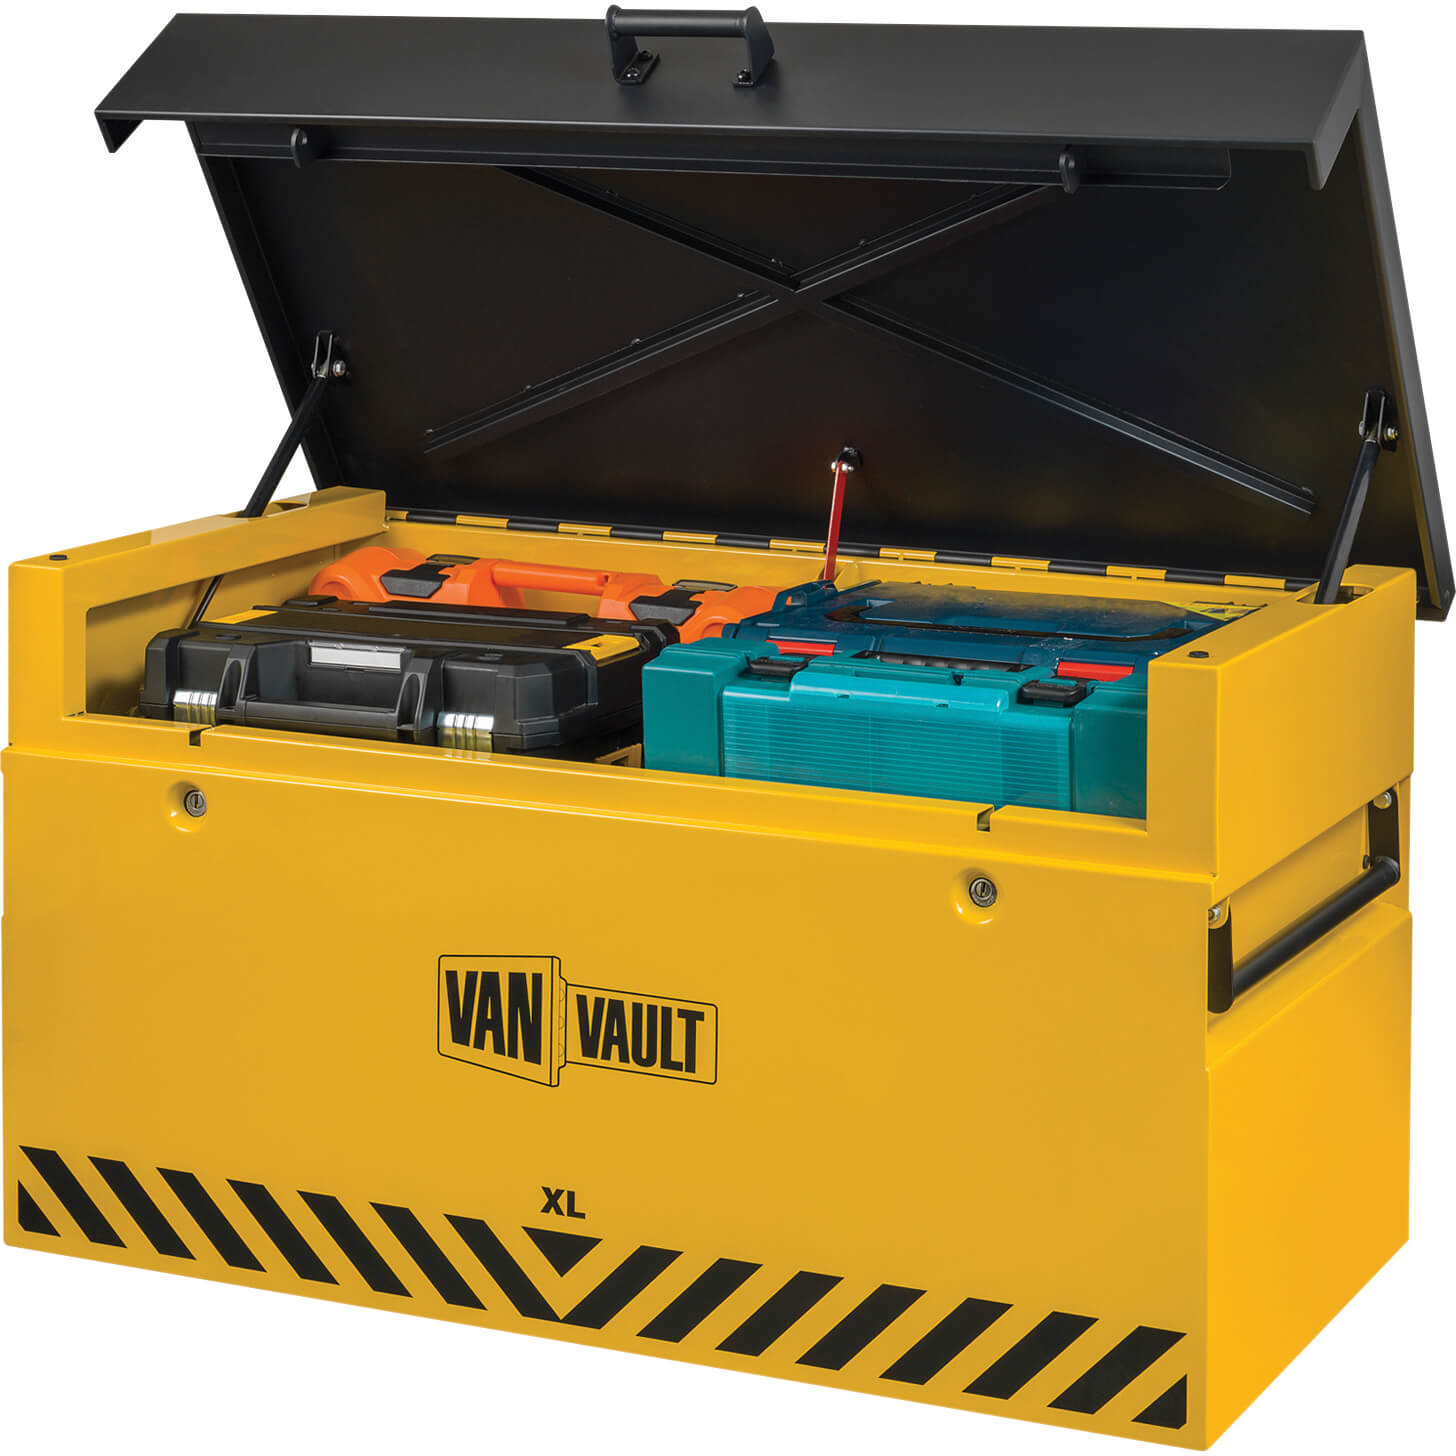 Image of Van Vault XL Secure Tool Storage 1190mm 645mm 635mm